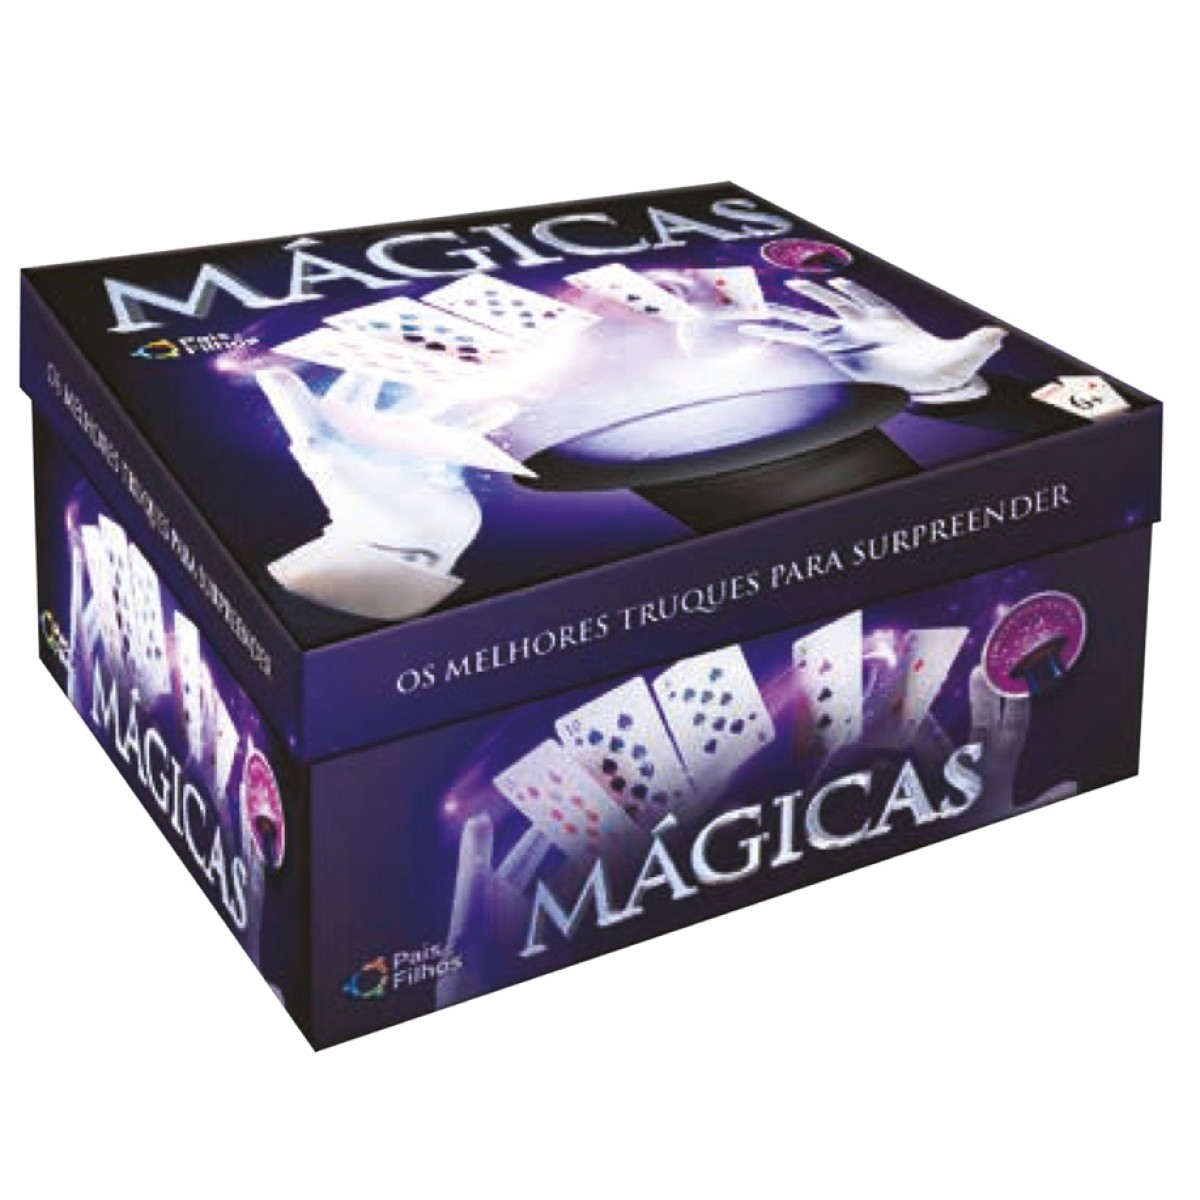 Kit de mágica infantil com 30 truques,varinha e cartola-7282-23566